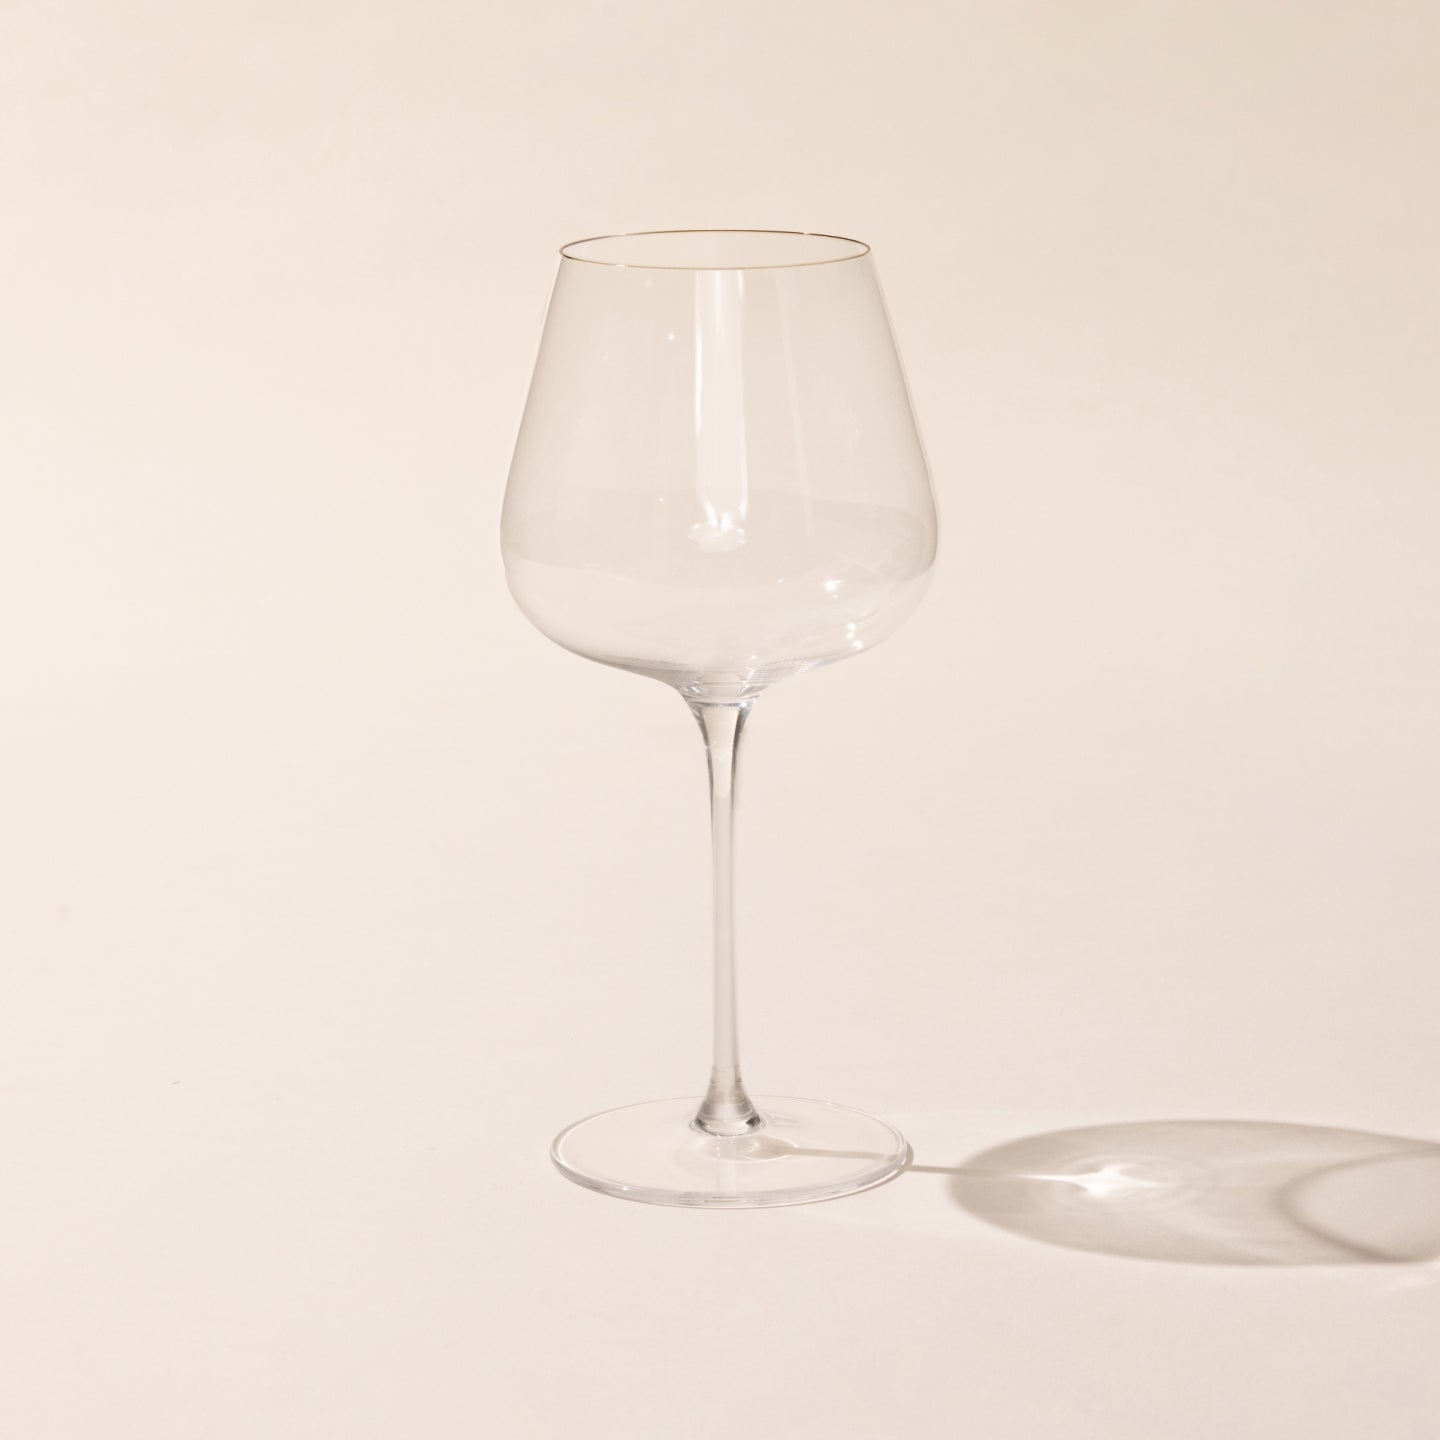 Size Matters - Stemless Wine Glass